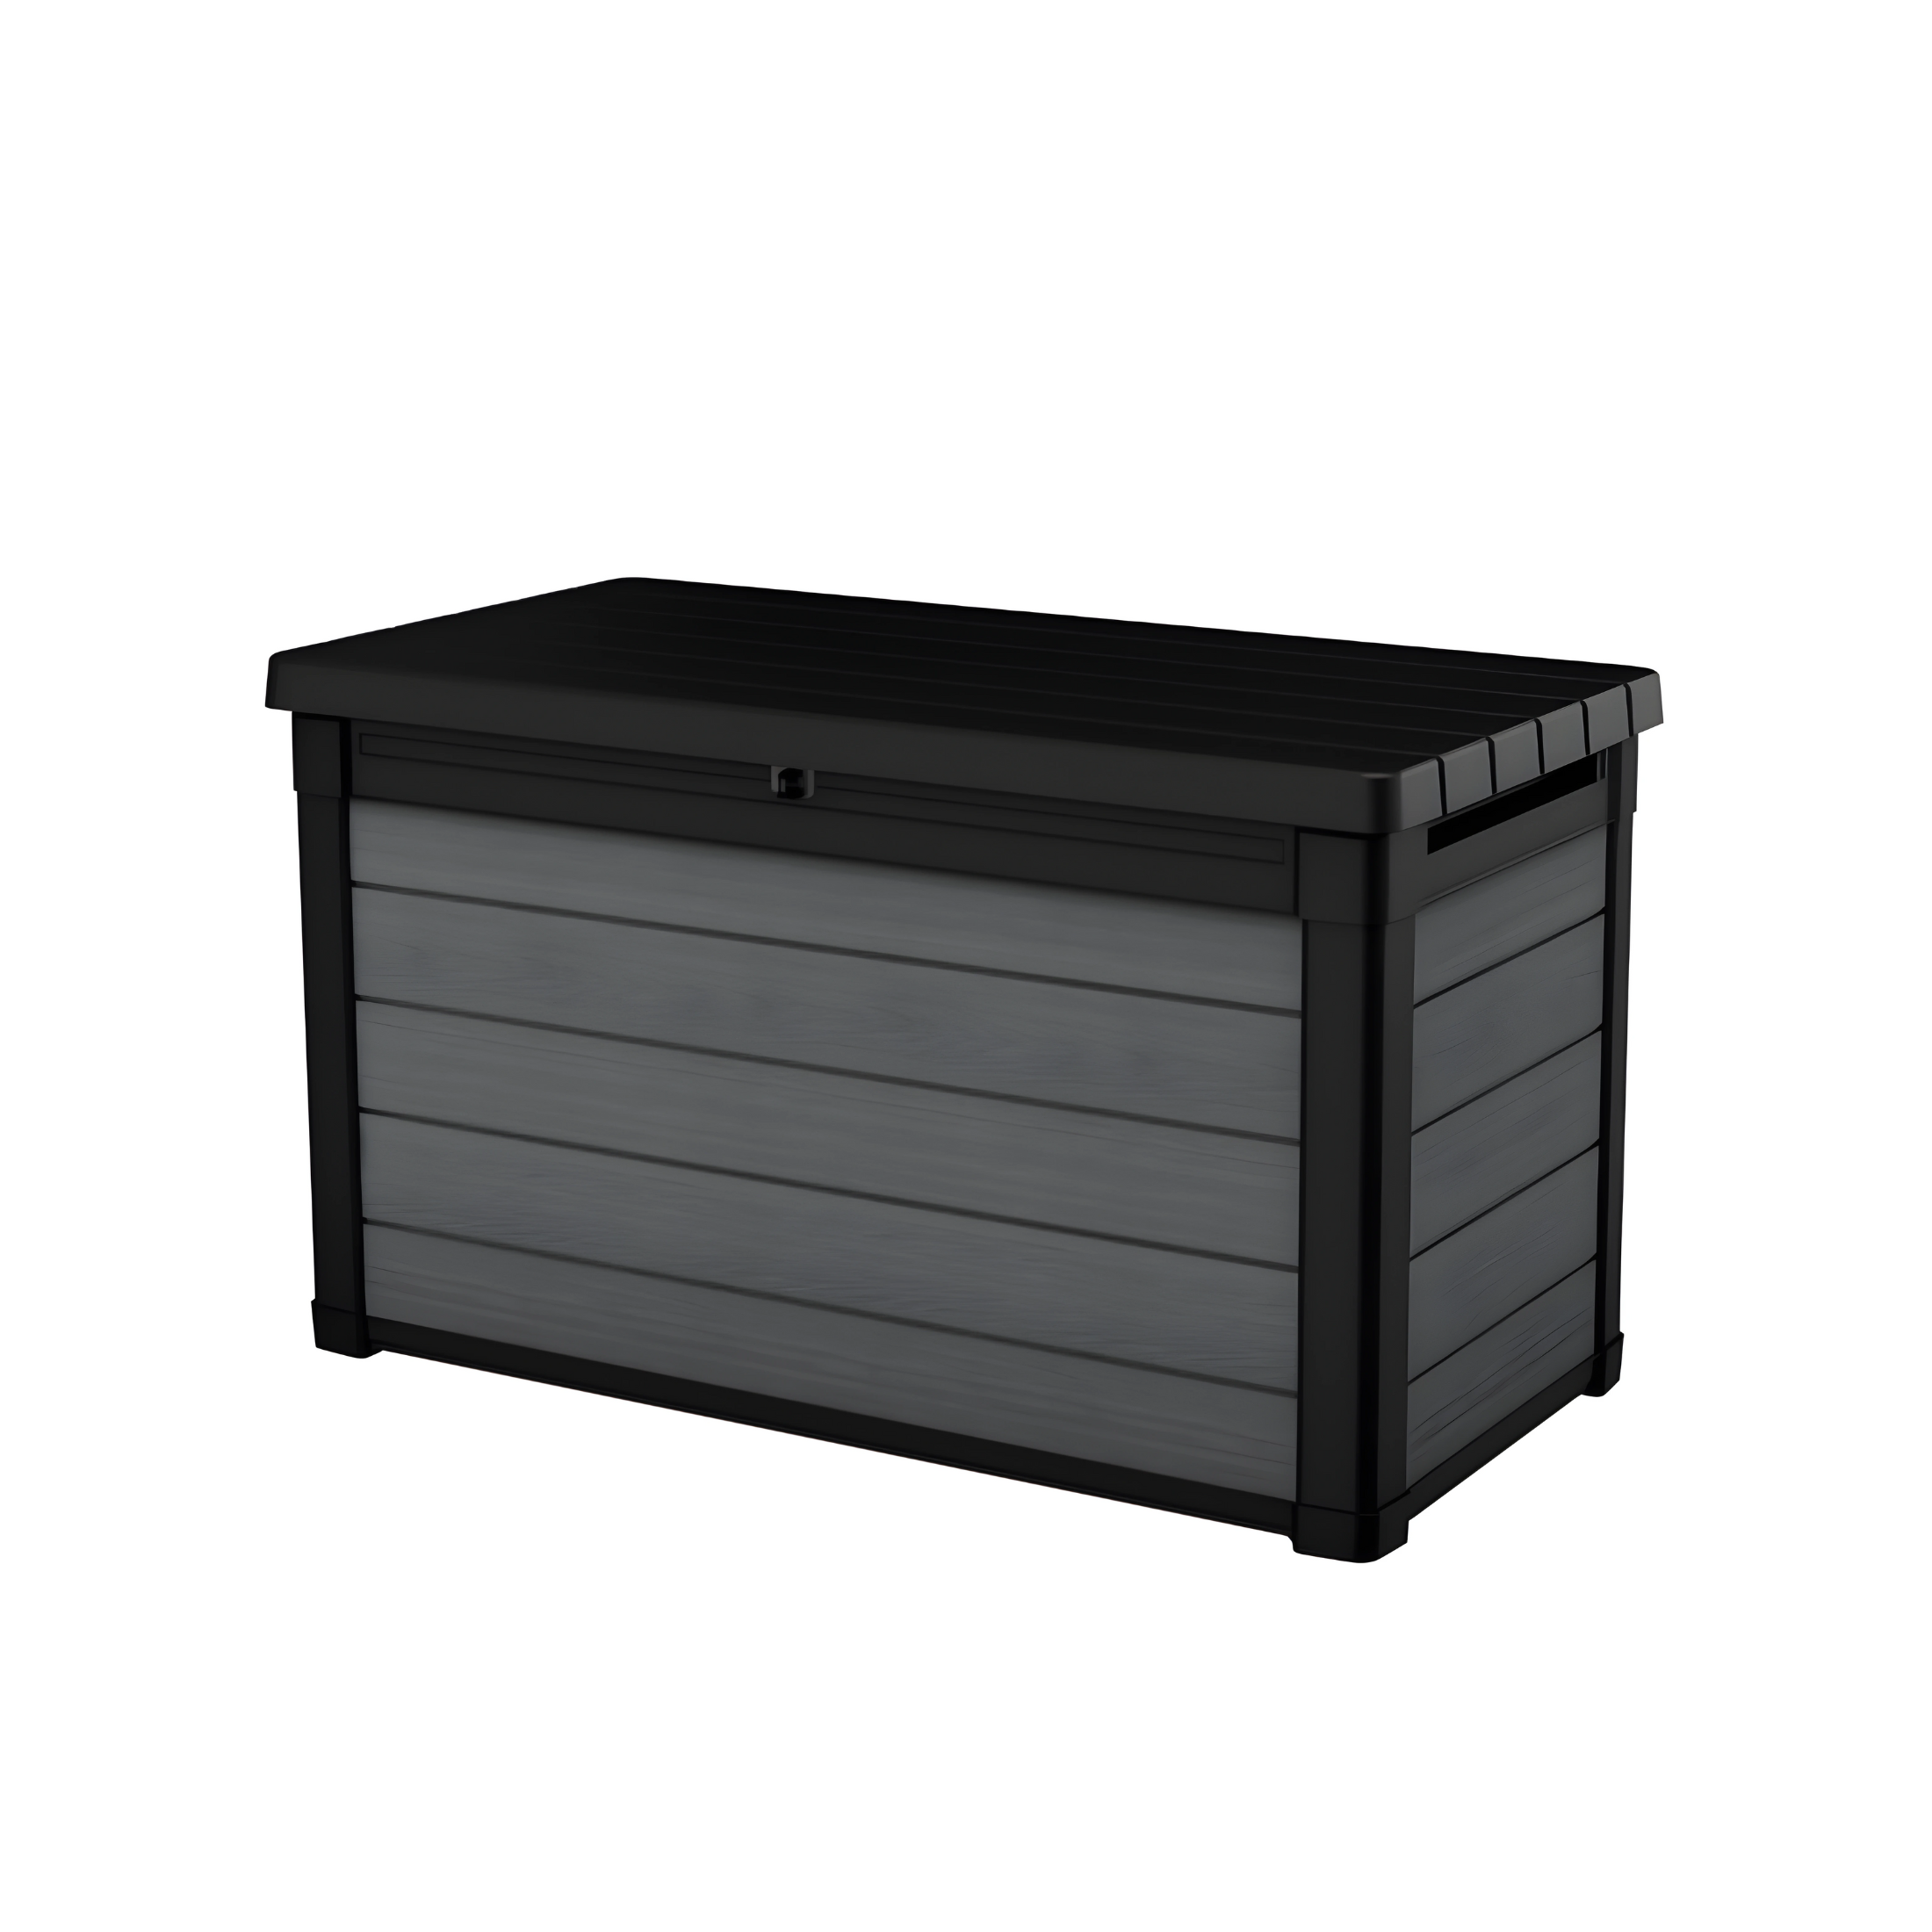 Baúl de exterior en resina "Cortina" negra efecto madera, espacioso 122,9x62,1 cm 70,6h